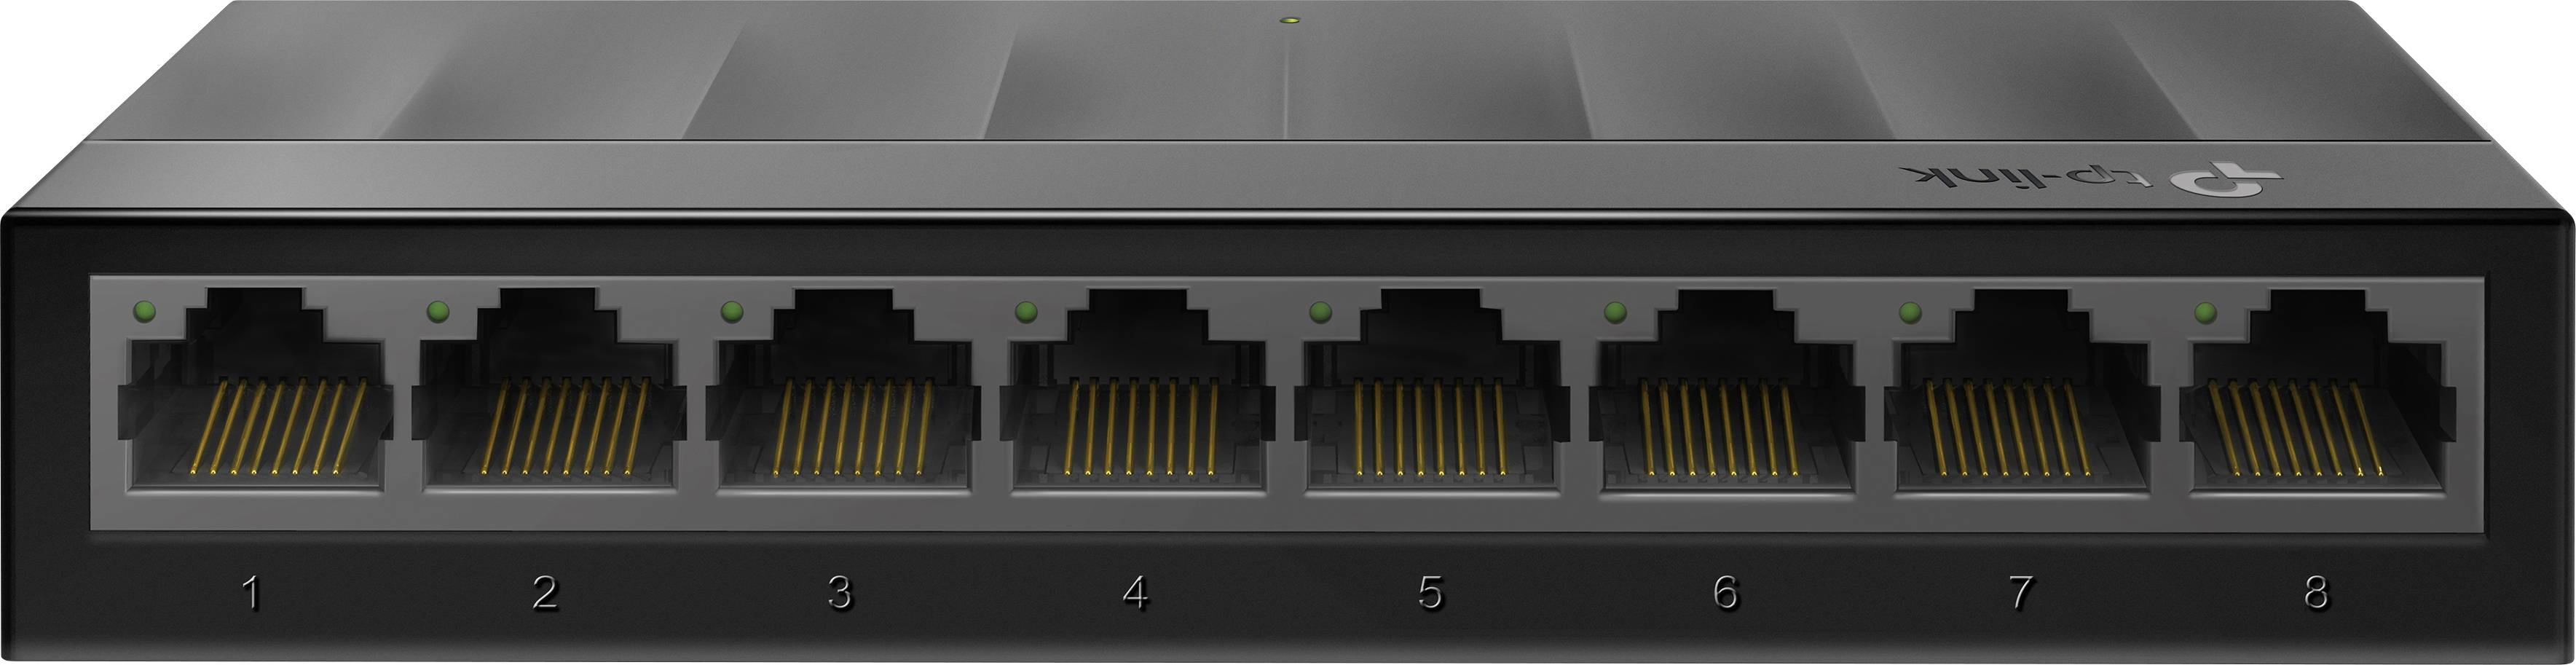 TP-LINK LiteWave 8-Port Gigabit Desktop Switch Plastic Case